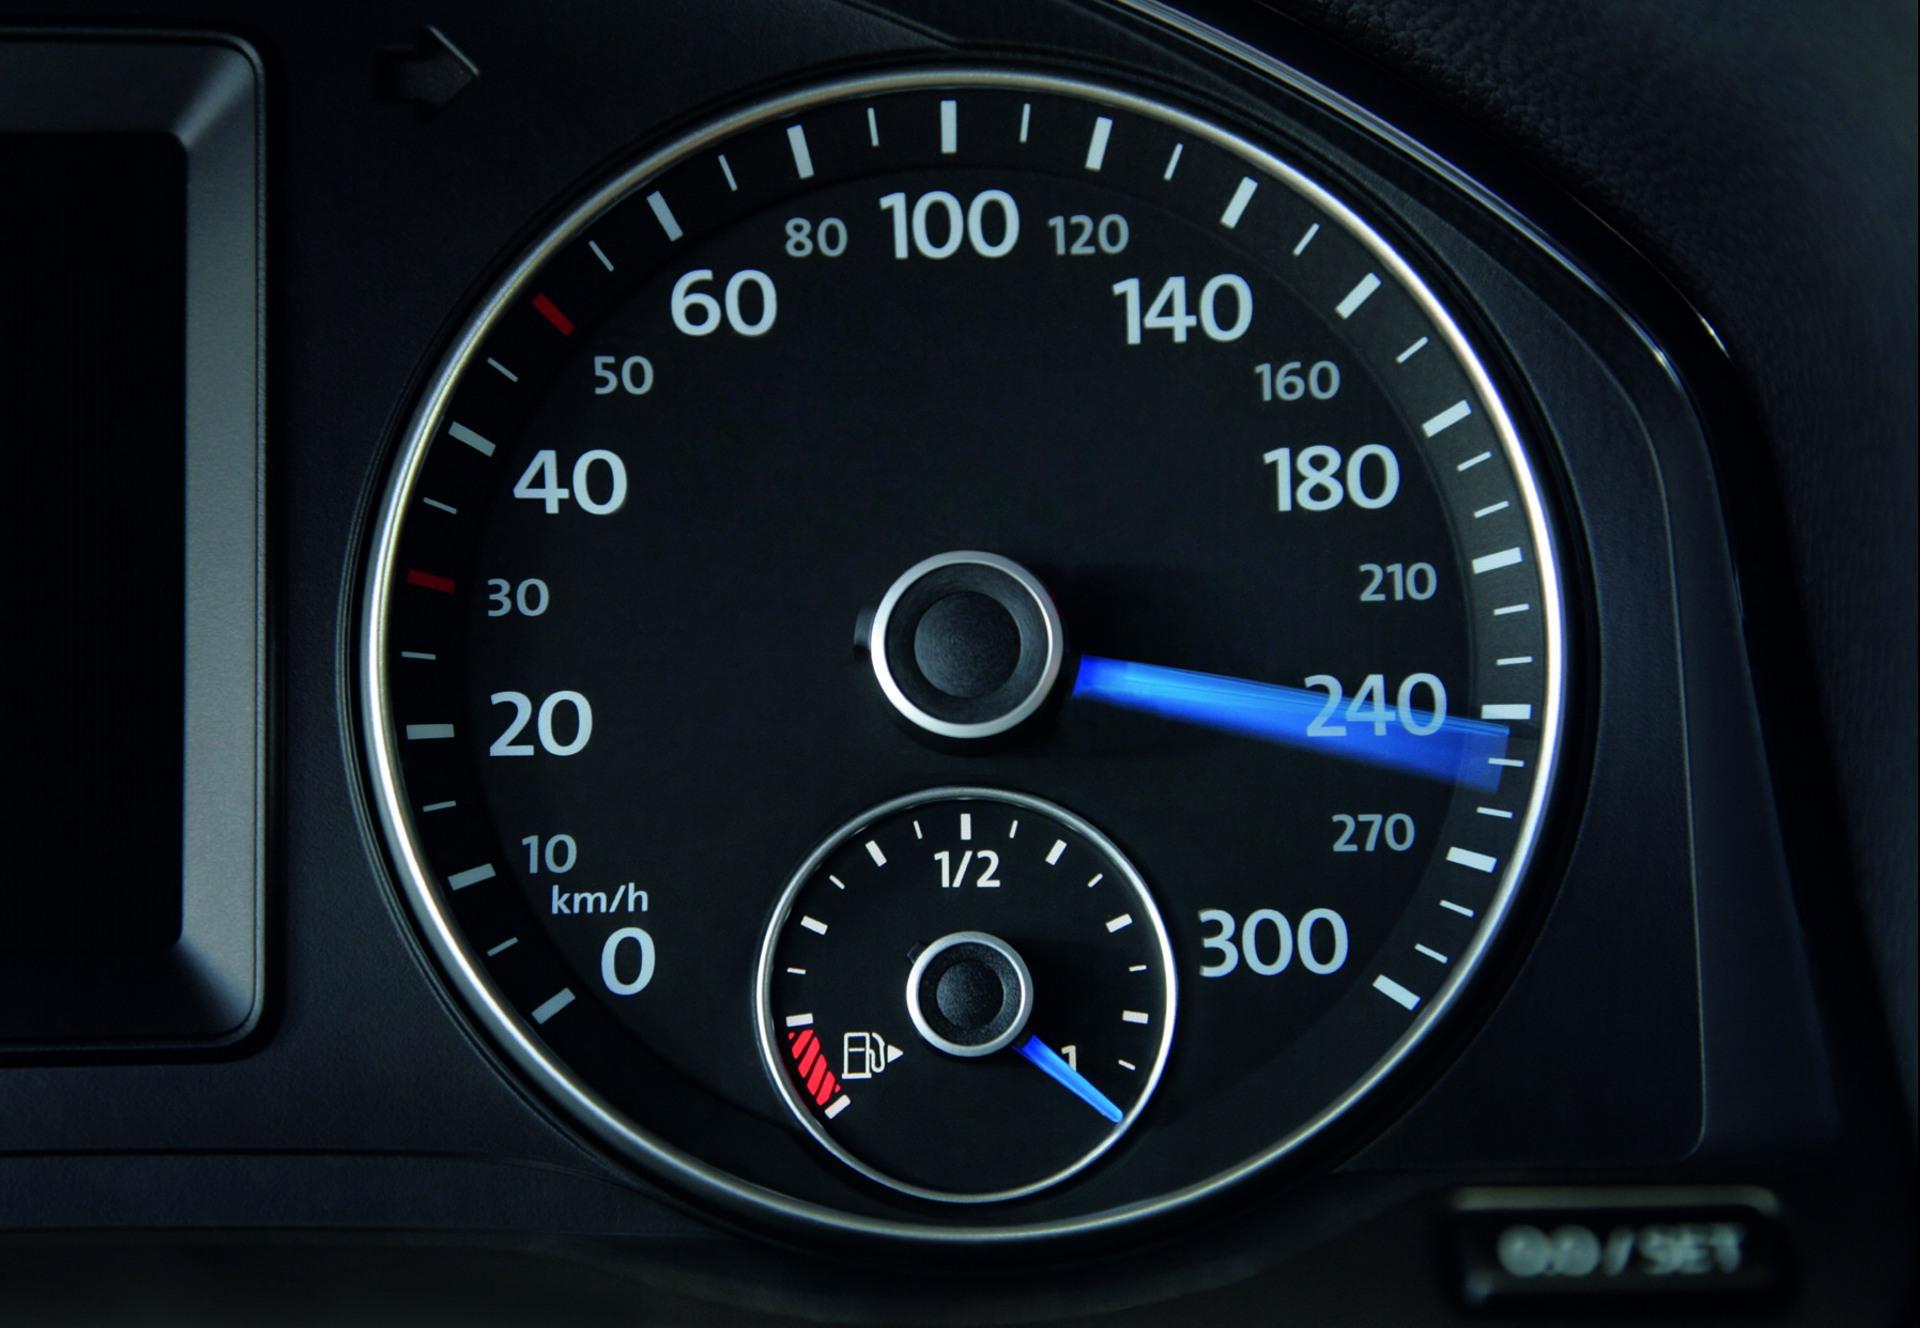 Скорость автомобиля 100км ч. Volkswagen Scirocco, 2010 спидометр. Спидометр Фольксваген в миль. Фольксваген Пассат спидометр 280км. Фольксваген Мультивен спидометр.